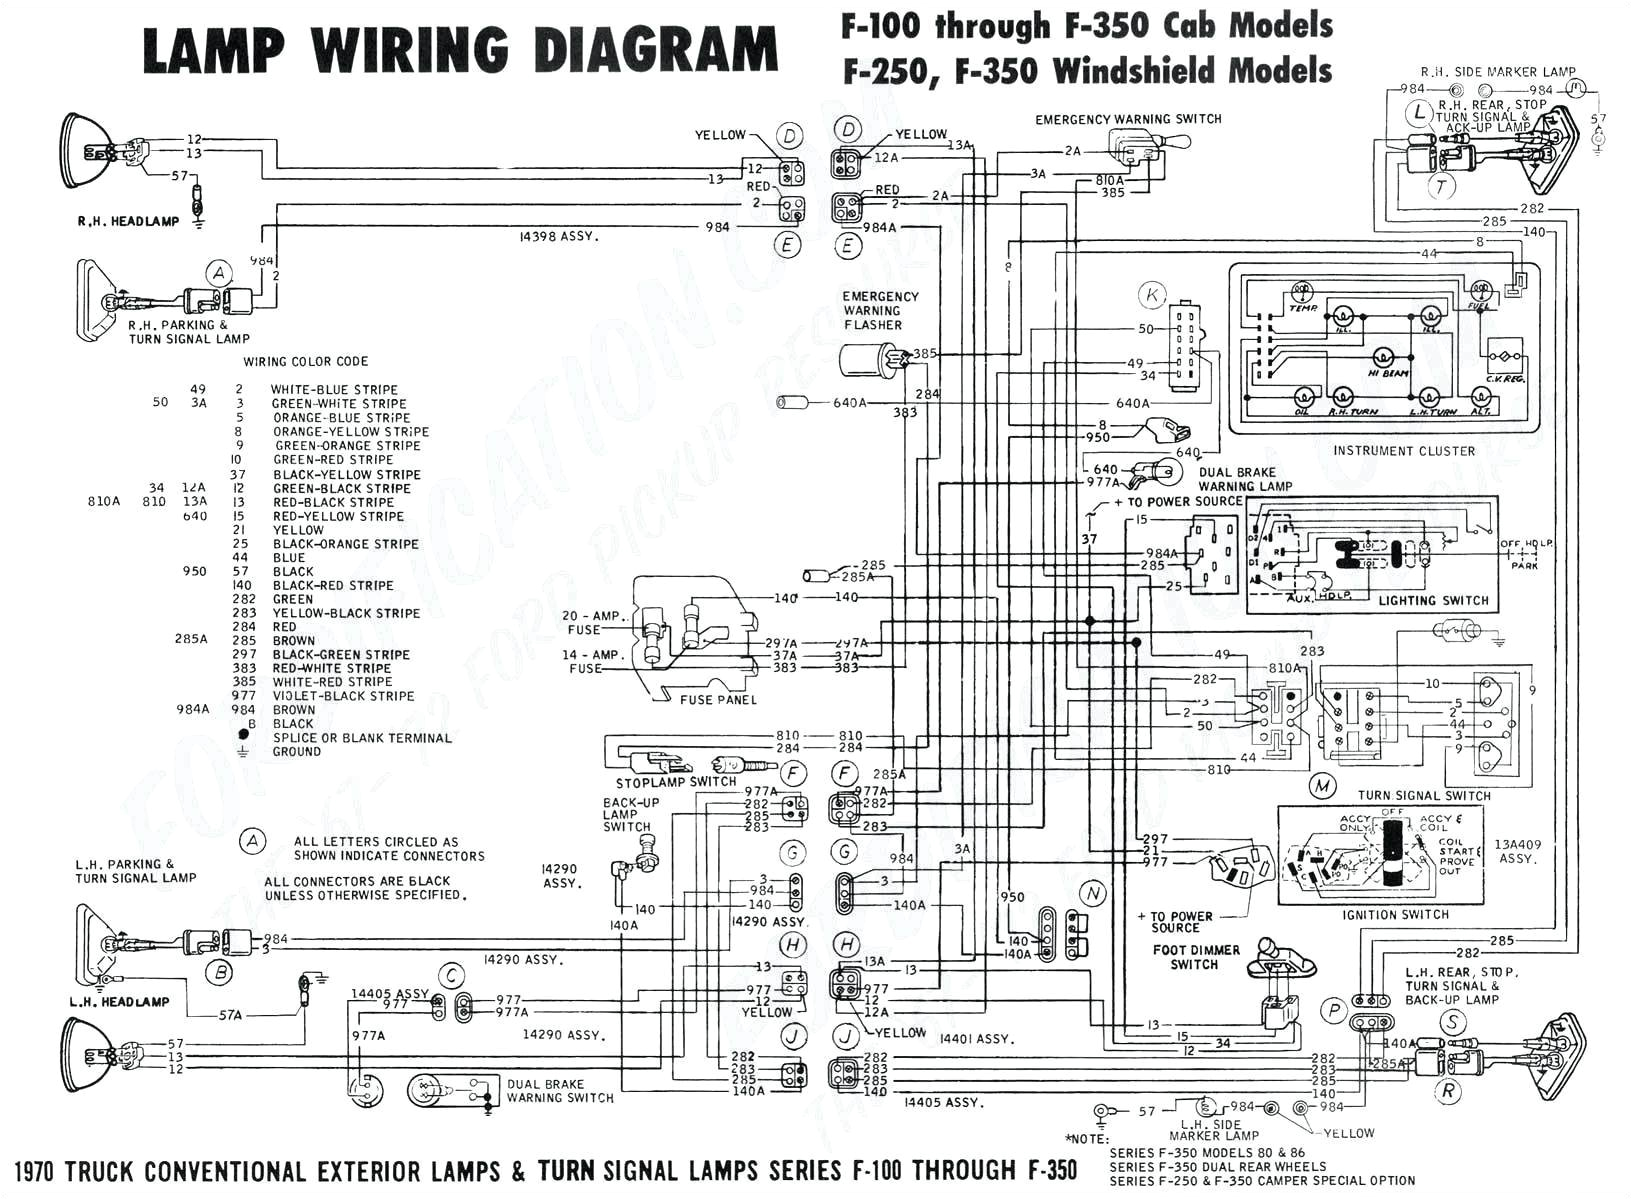 1998 Gmc Sierra Stereo Wiring Diagram 94h94j 3 Way Switch Wiring Stereo Wiring Diagram for 1998